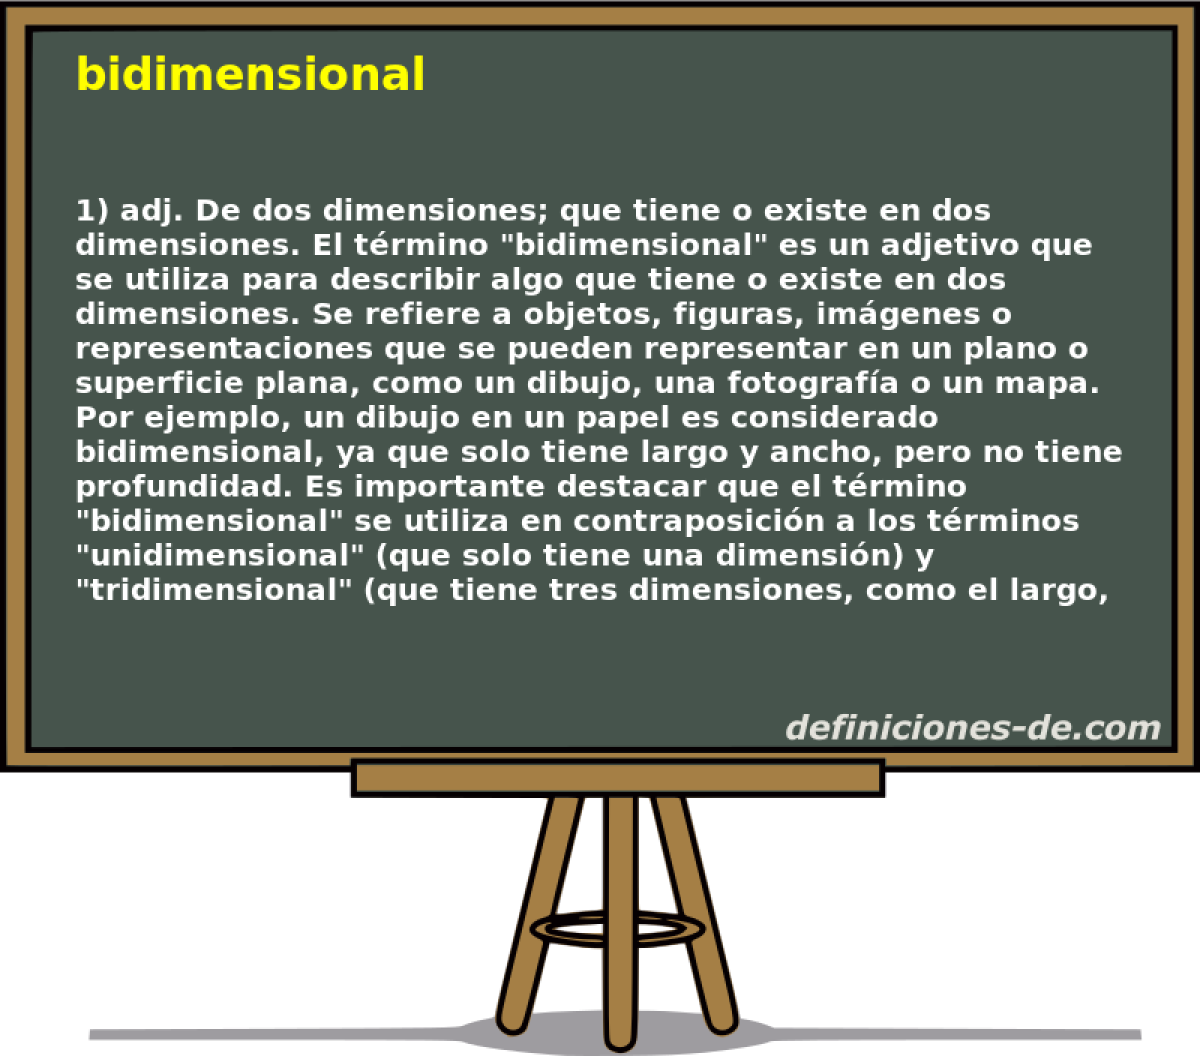 bidimensional 